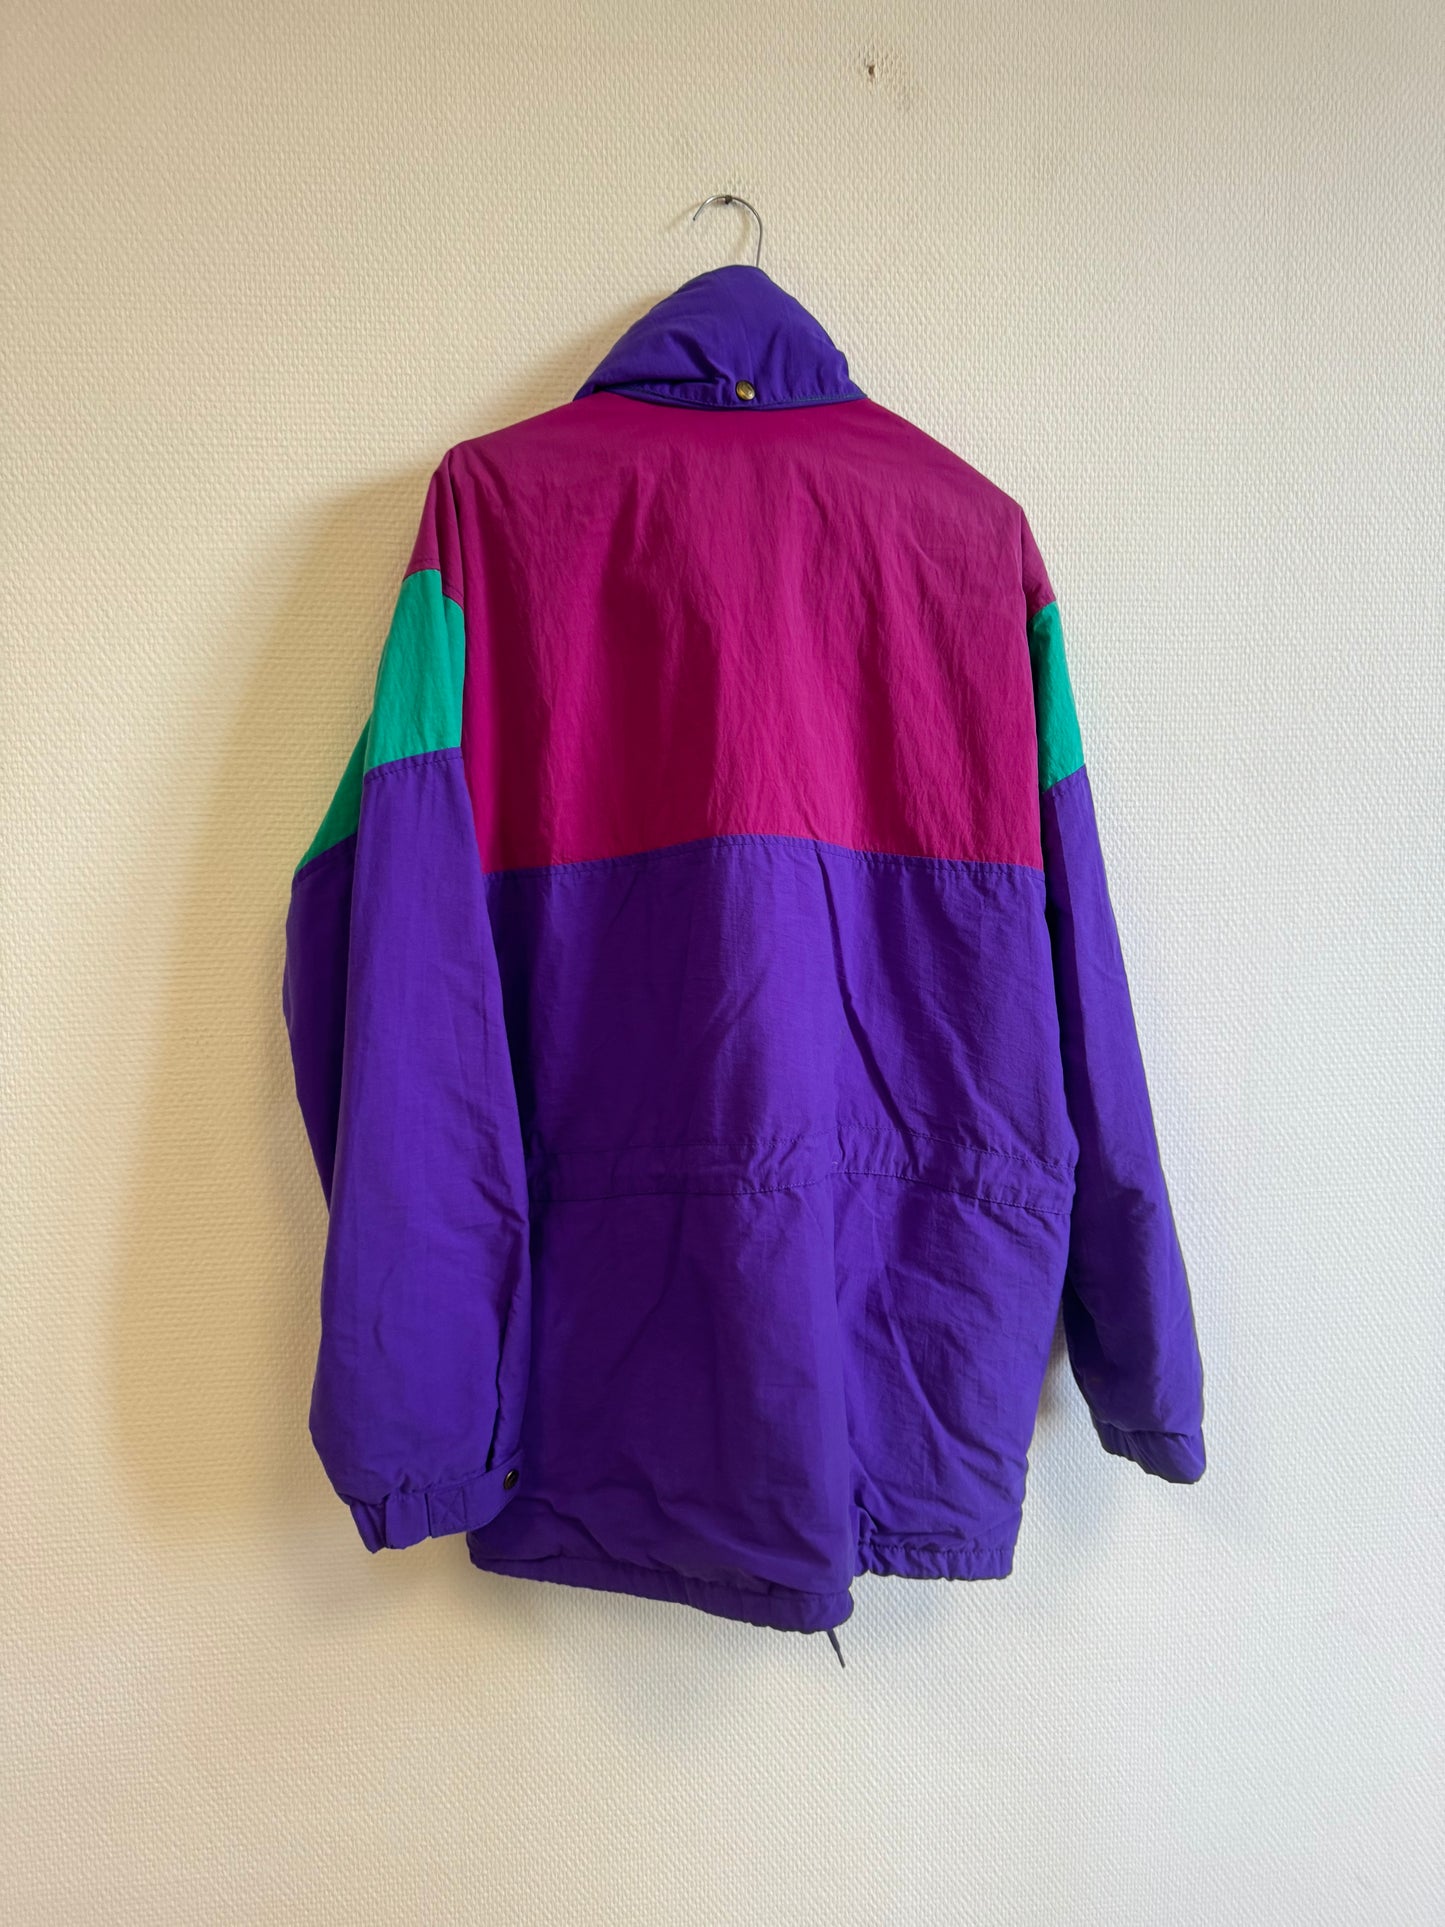 Blouson violet 90s